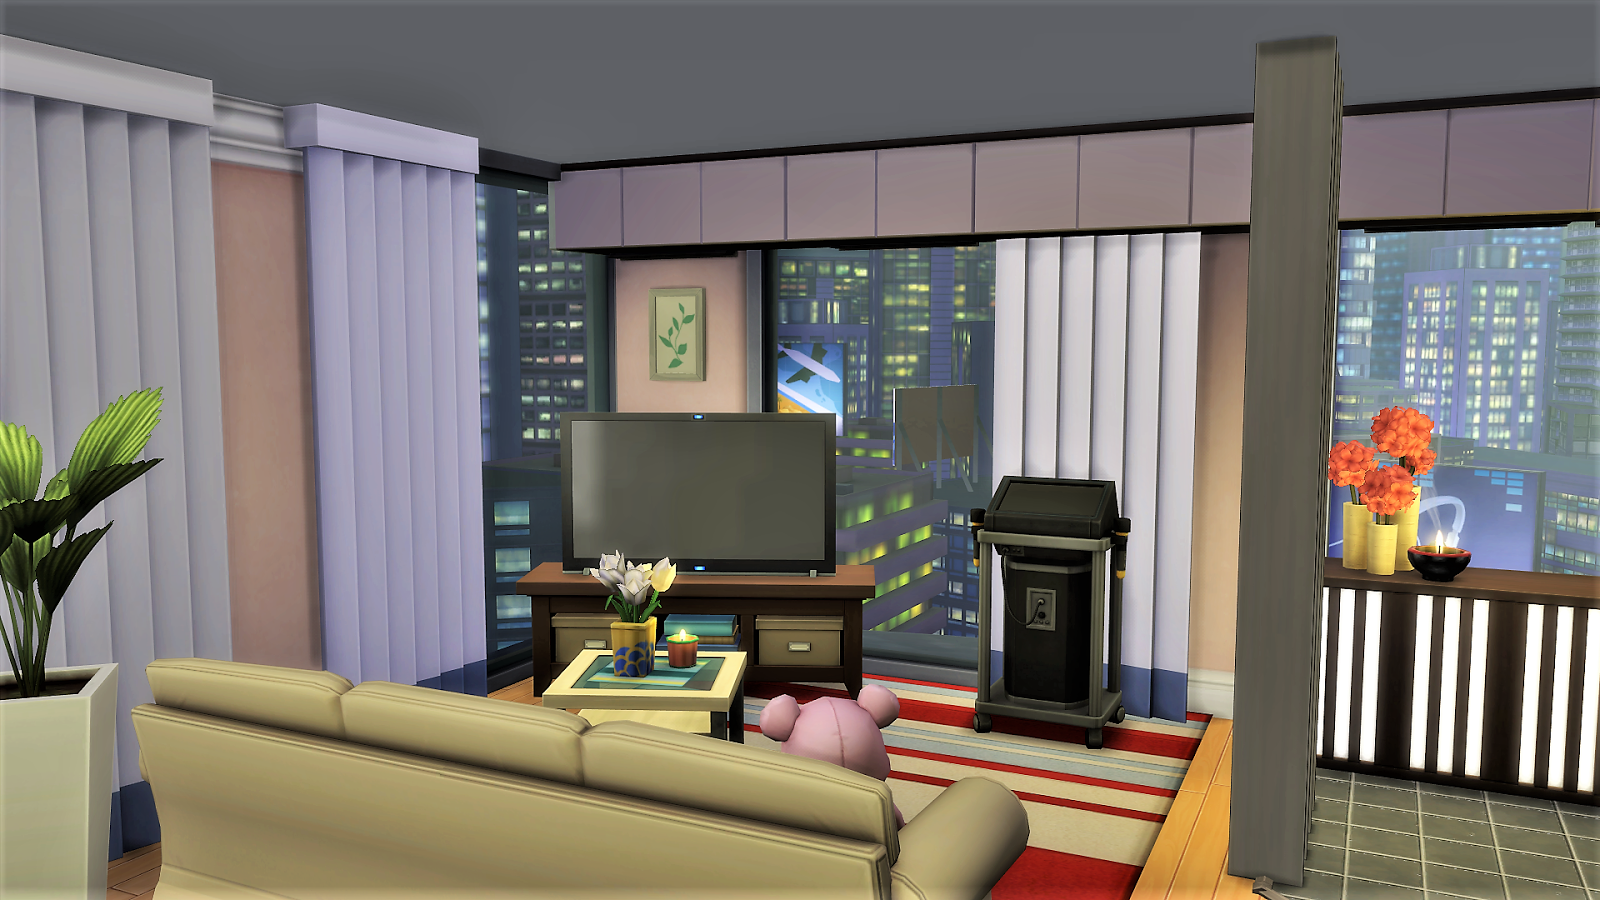 Sim House Design Workshop Sims 4 Japanese Kawaii Apartment